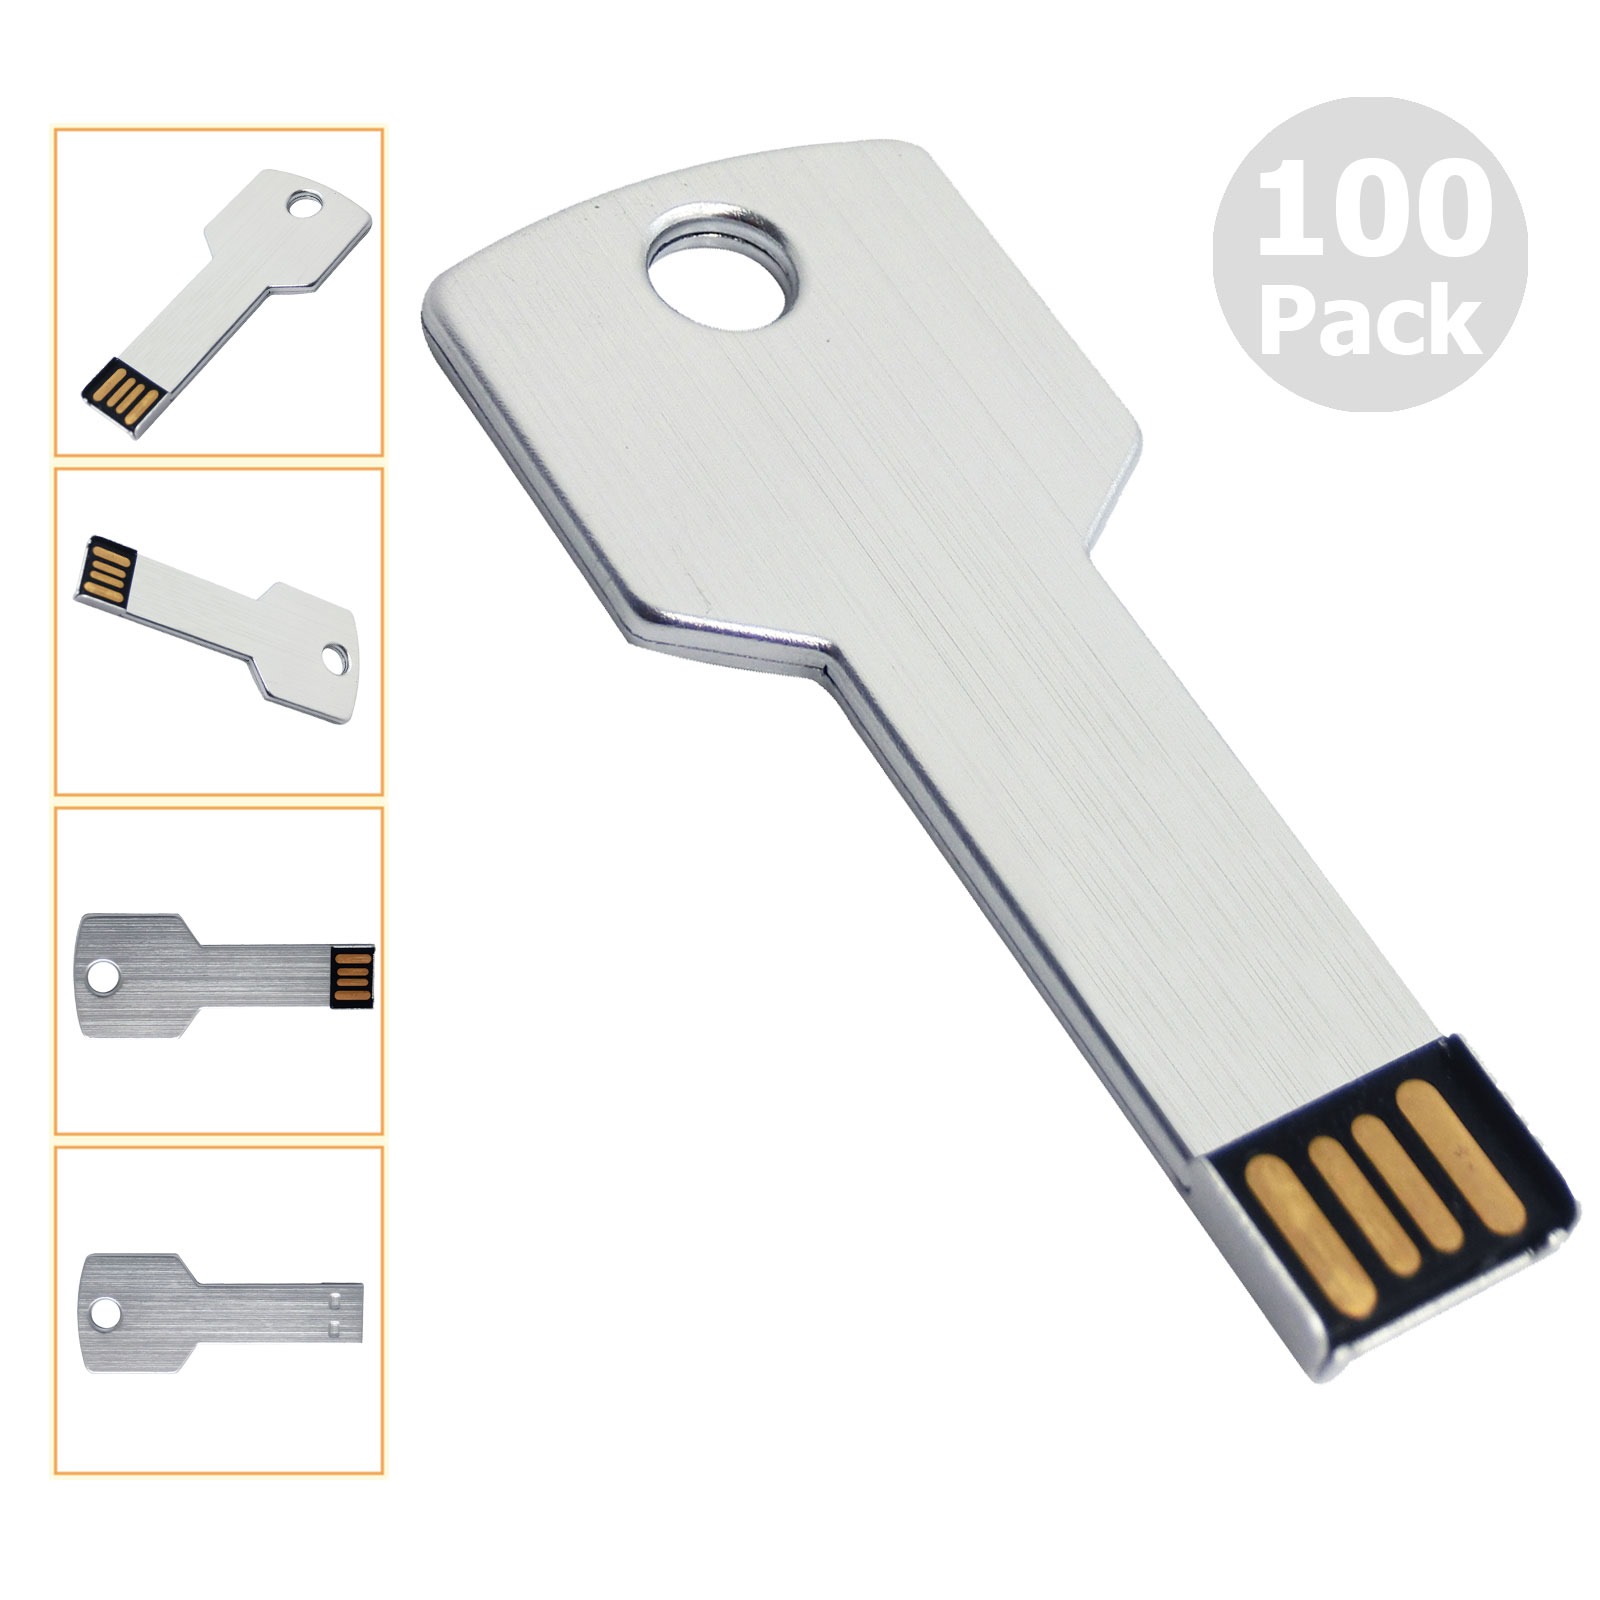 Ücretsiz gönderim 100pcs 16GB USB 2.0 Flash Sürücüler Flash Bellek Çubuğu Metal Anahtar Boş Ortam PC Dizüstü Bilgisayar MacBook Başparmak Kalem Çok Havalandırıyor